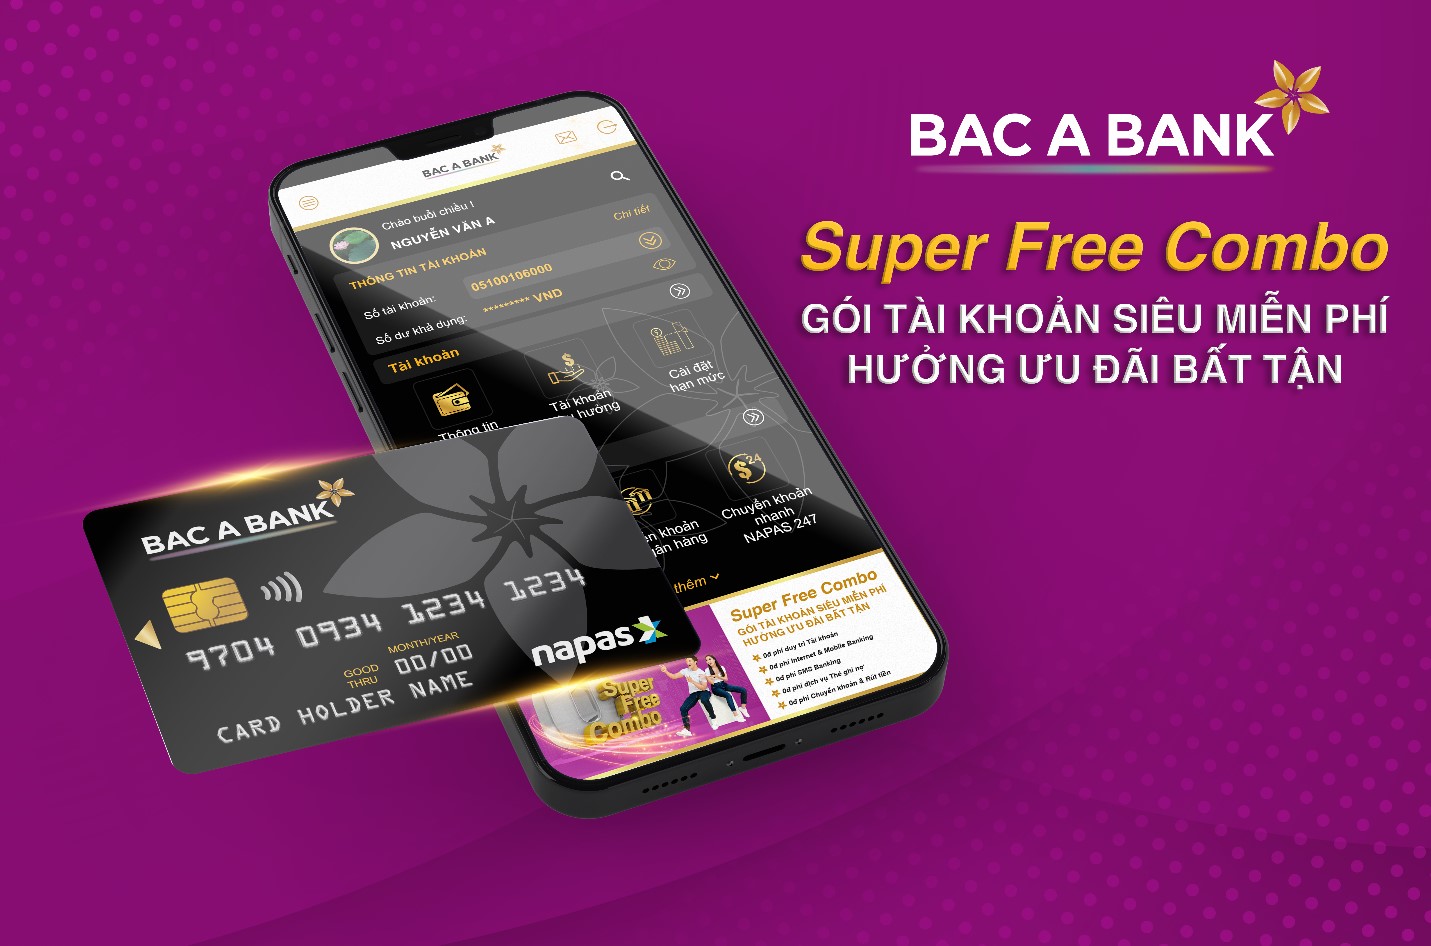 BAC A BANK đưa ra thị trường gói tài khoản siêu miễn phí - Super Free Combo - Ảnh 1.